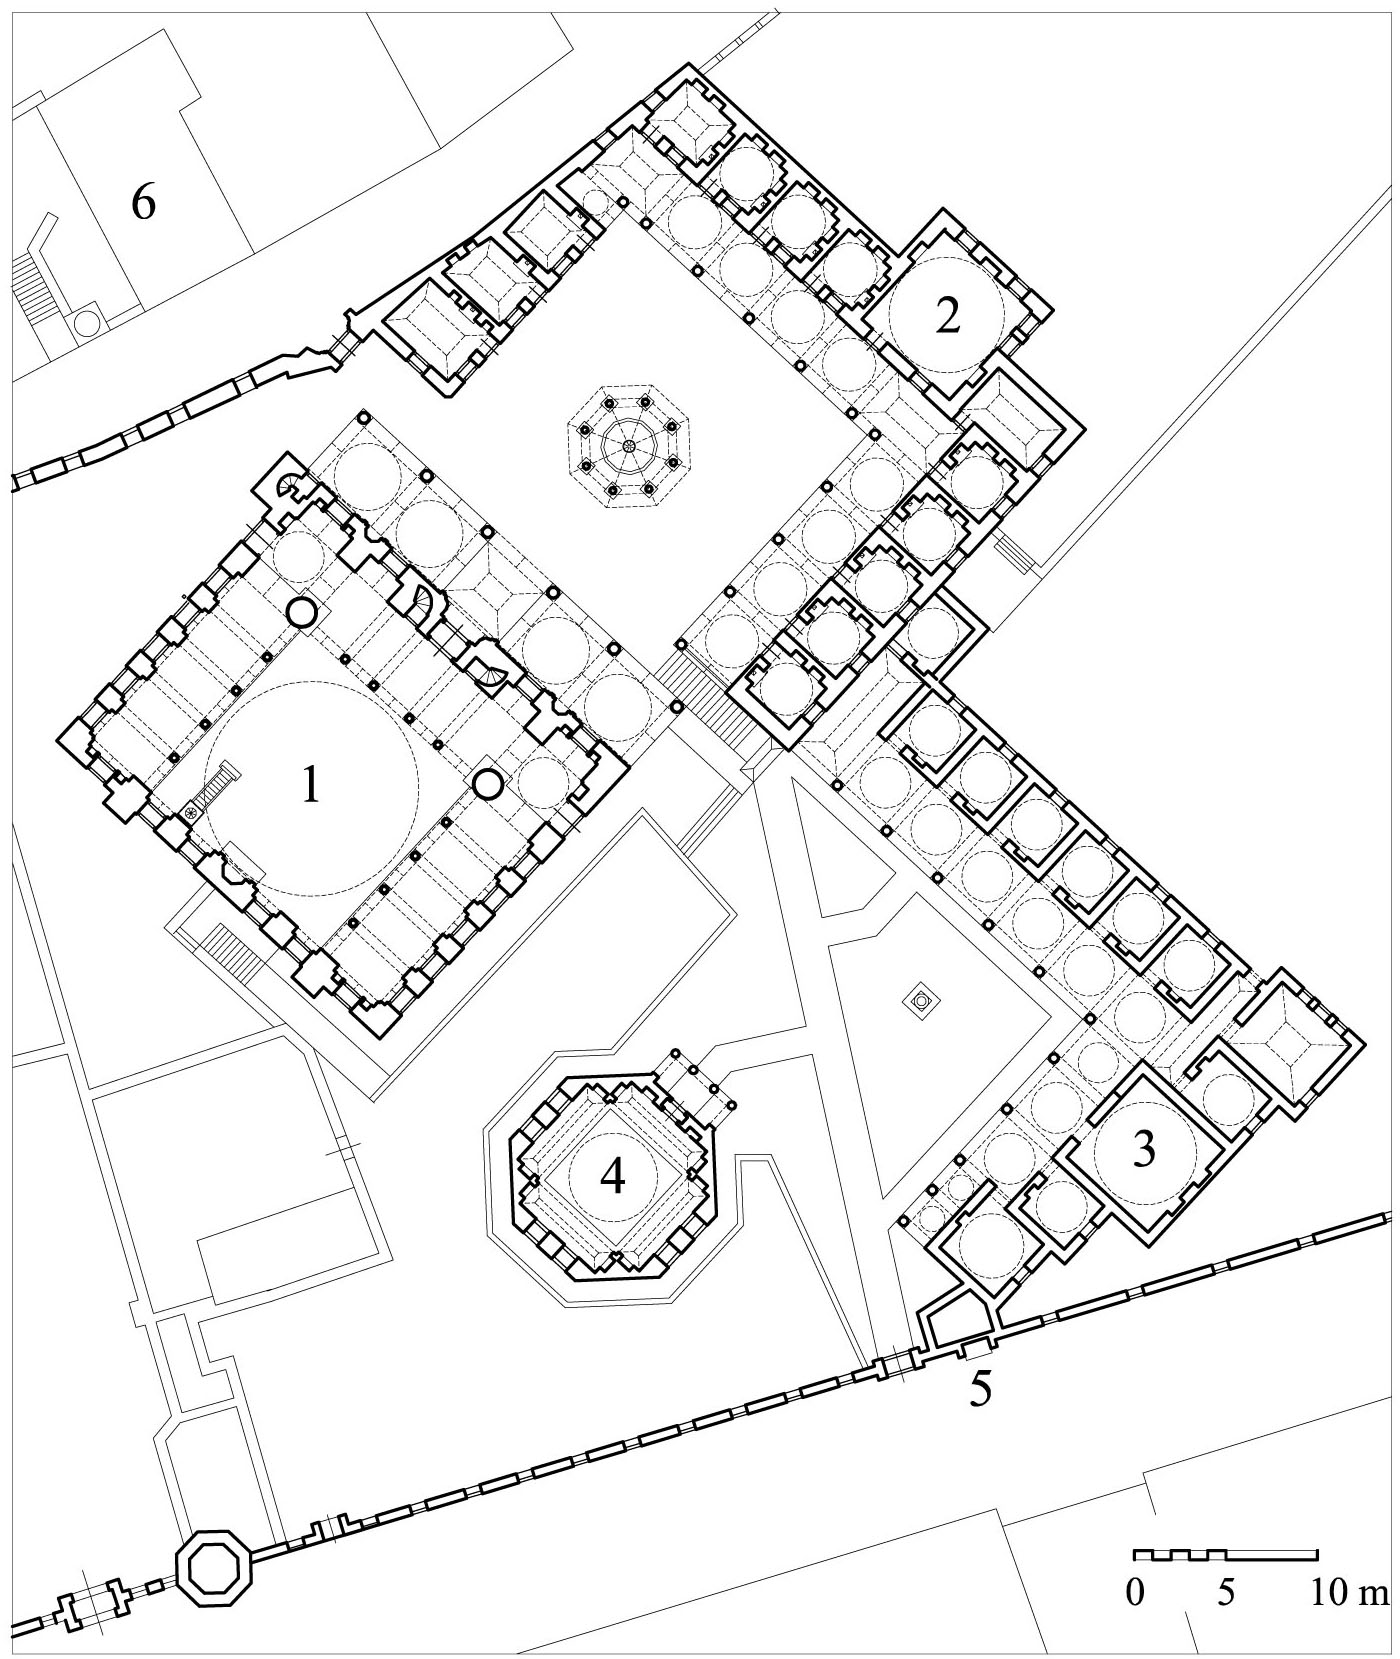 Floor plan of Zal Mahmud Pasa Complex